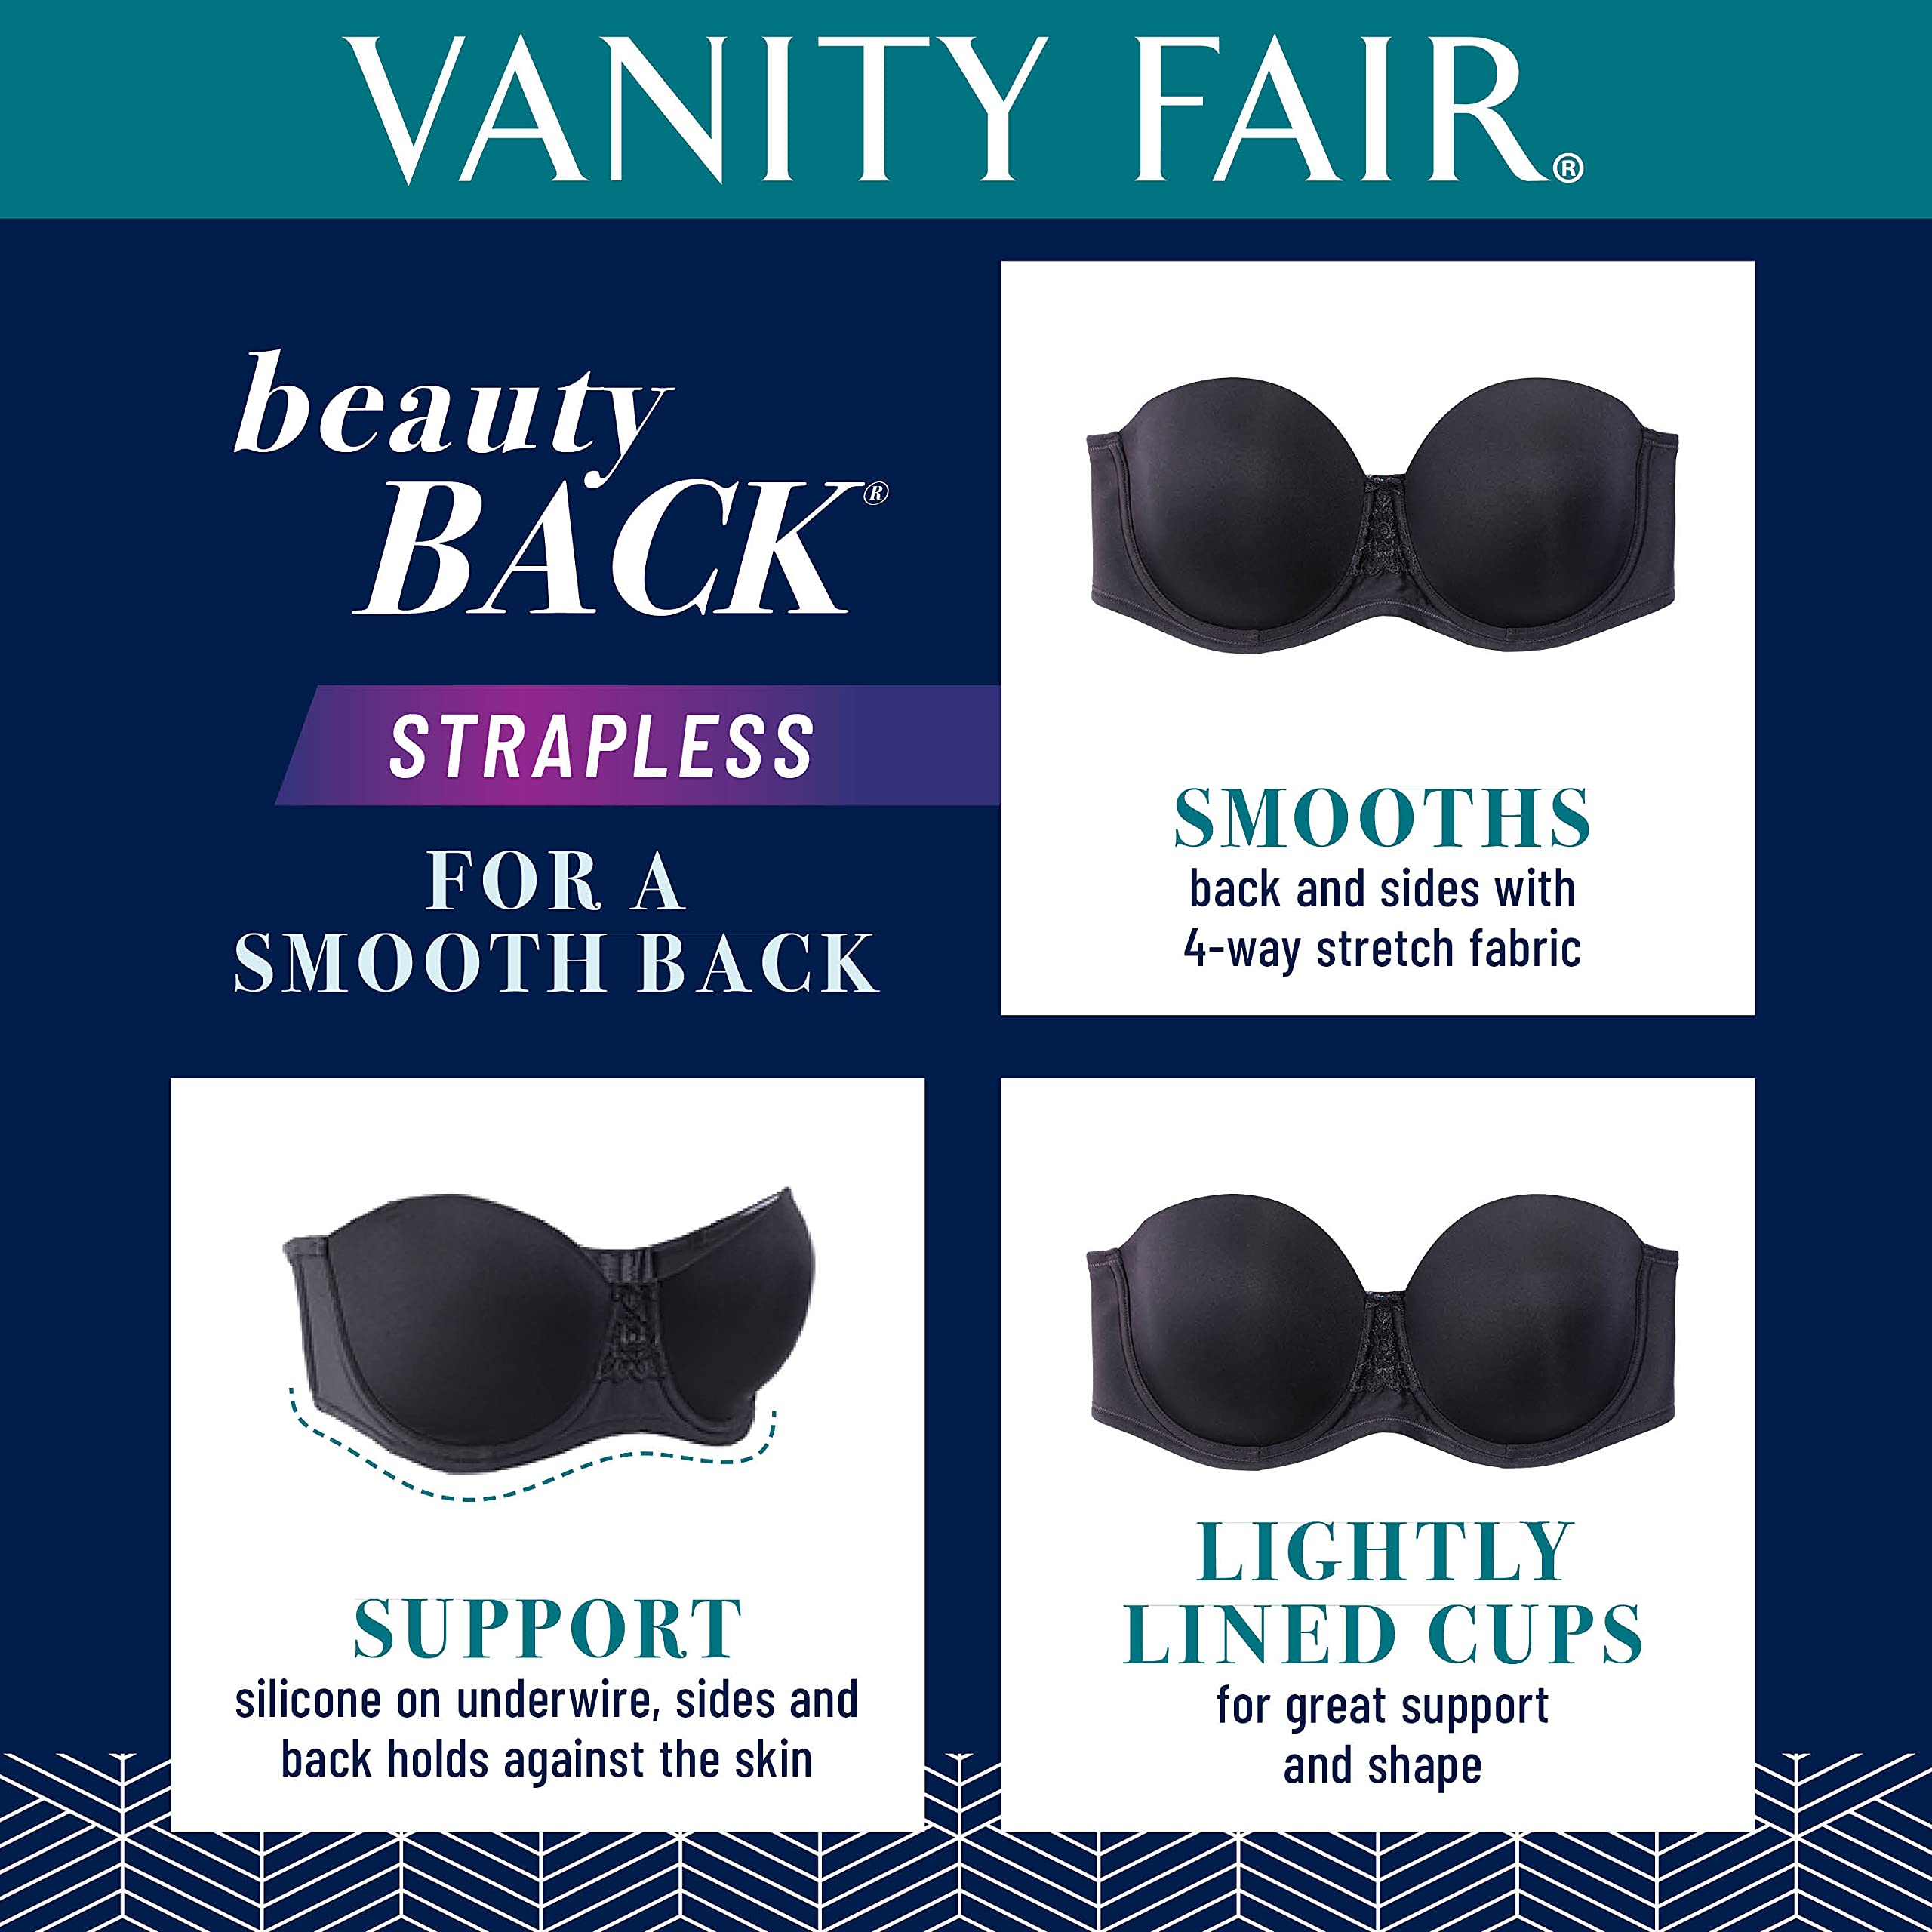 Vanity Fair Women's Beauty Back Smoothing Strapless Bra